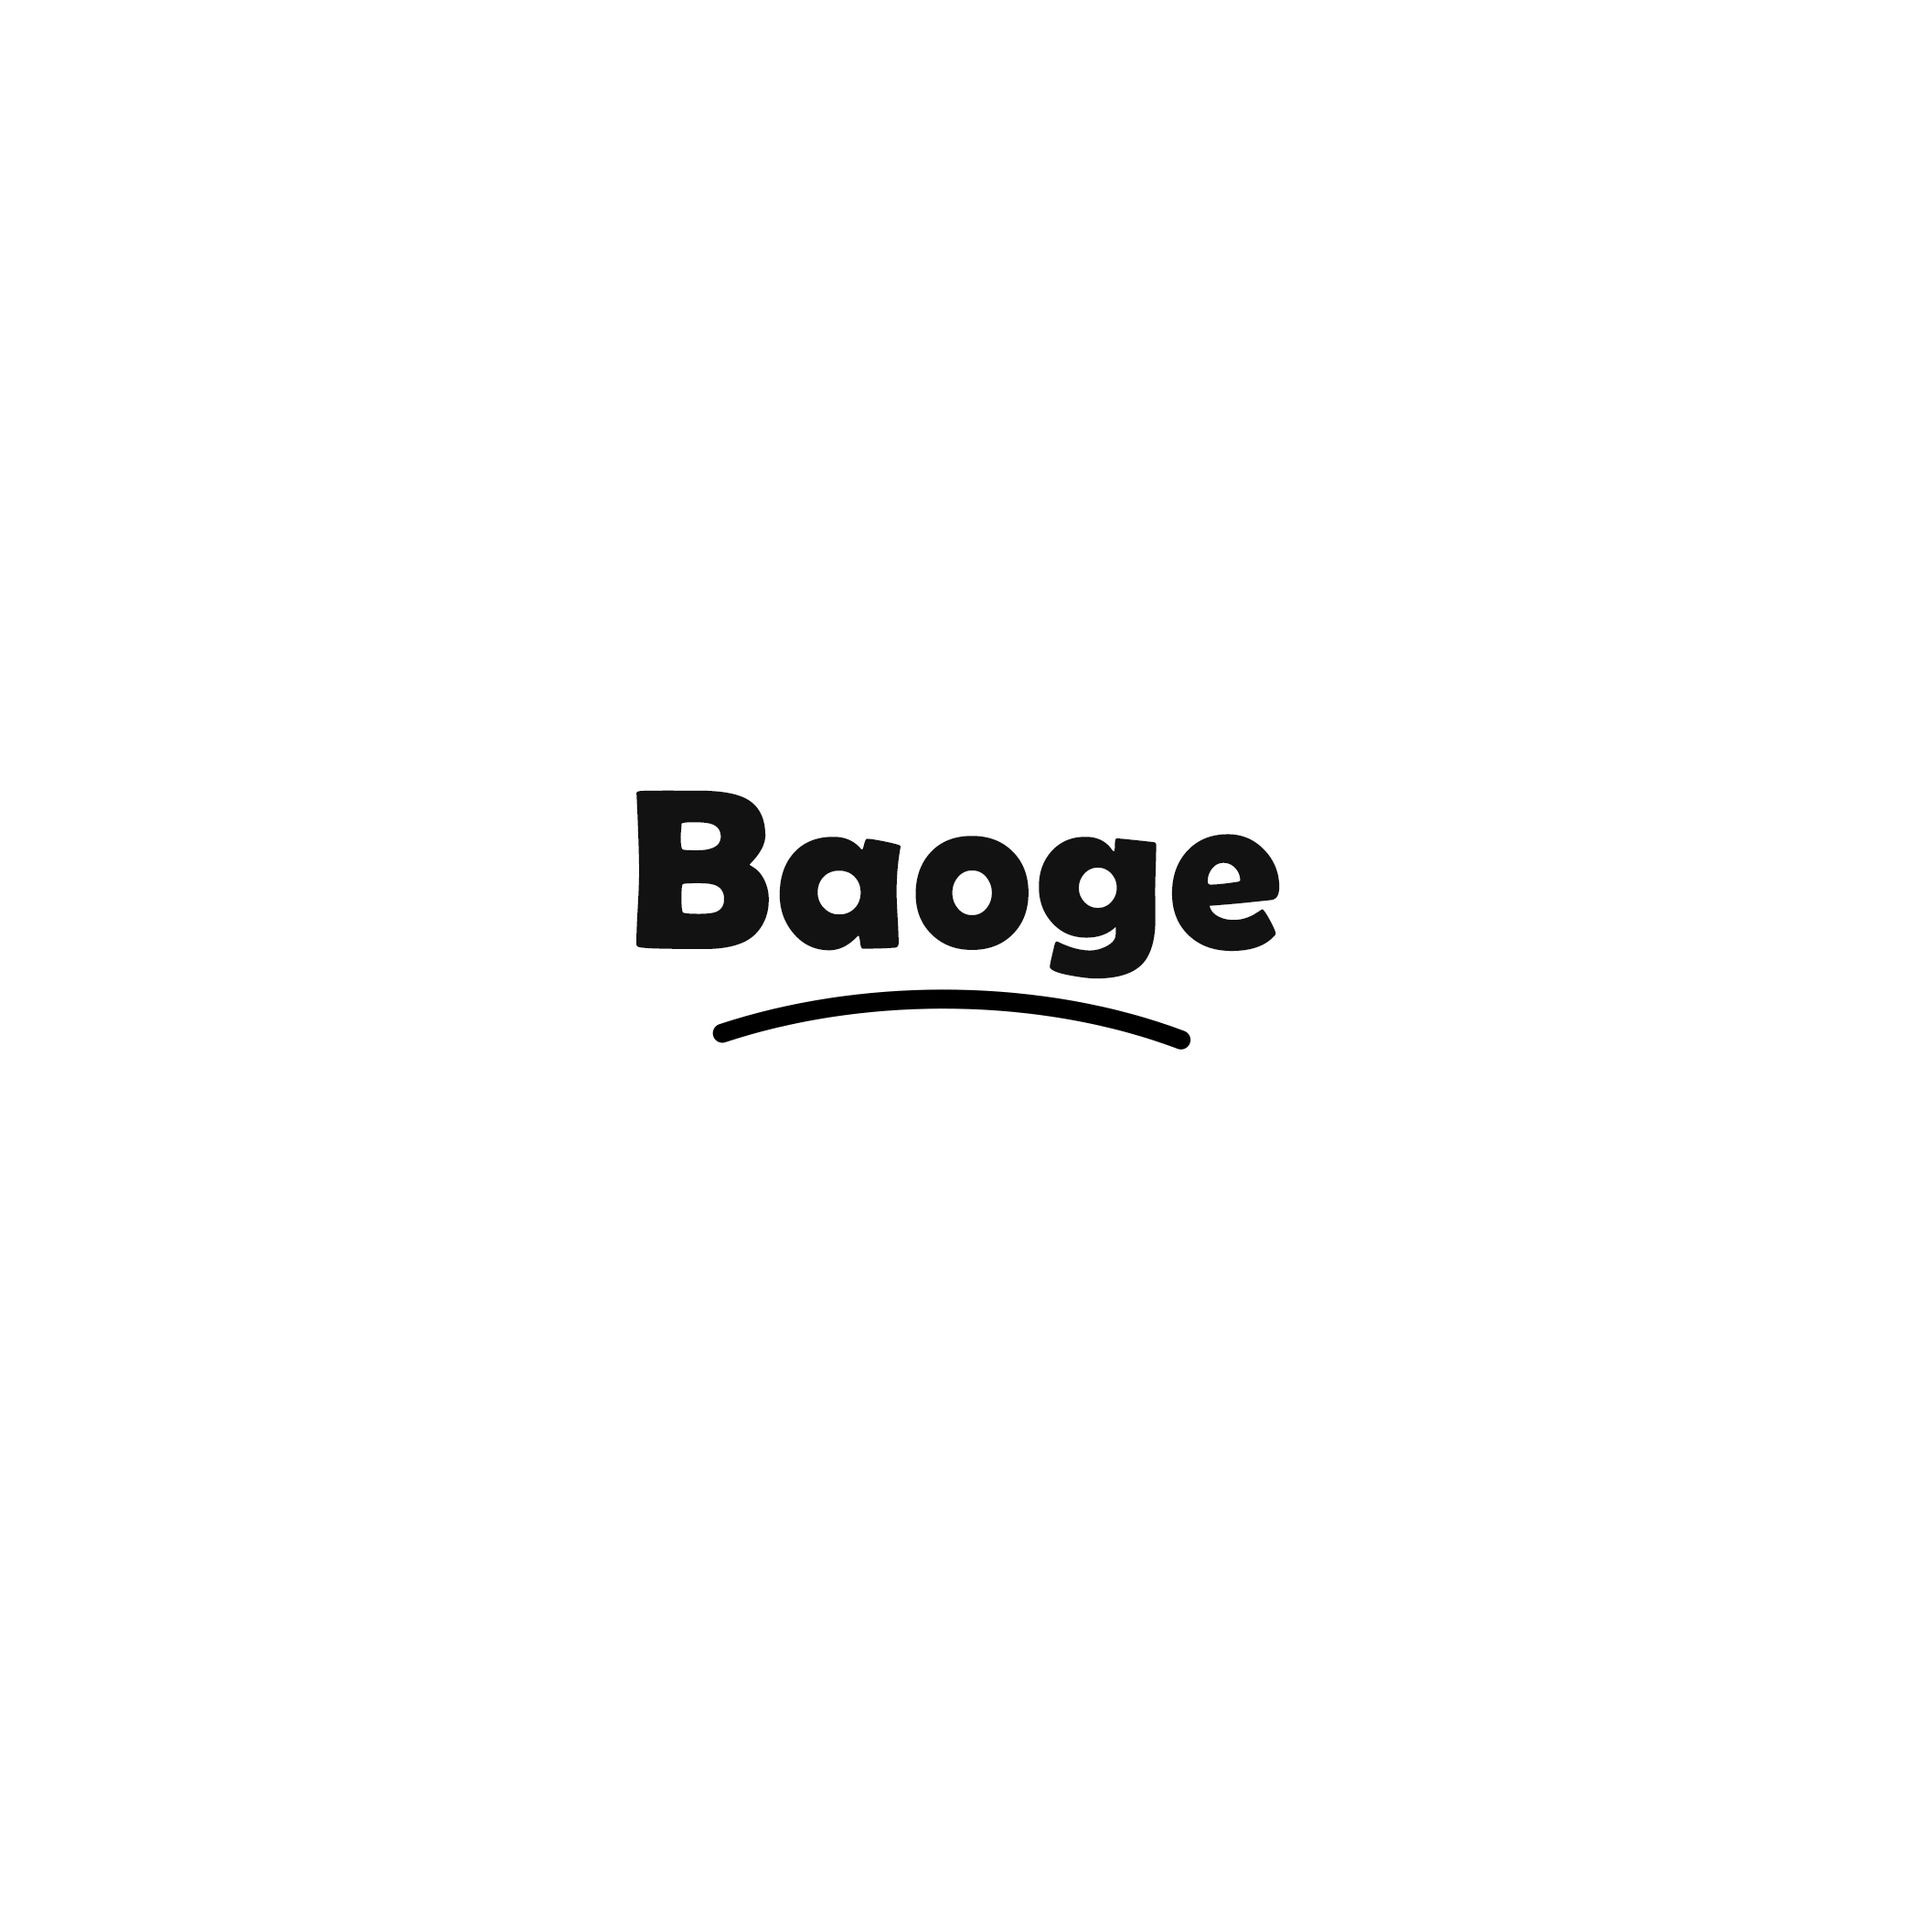 Baoge